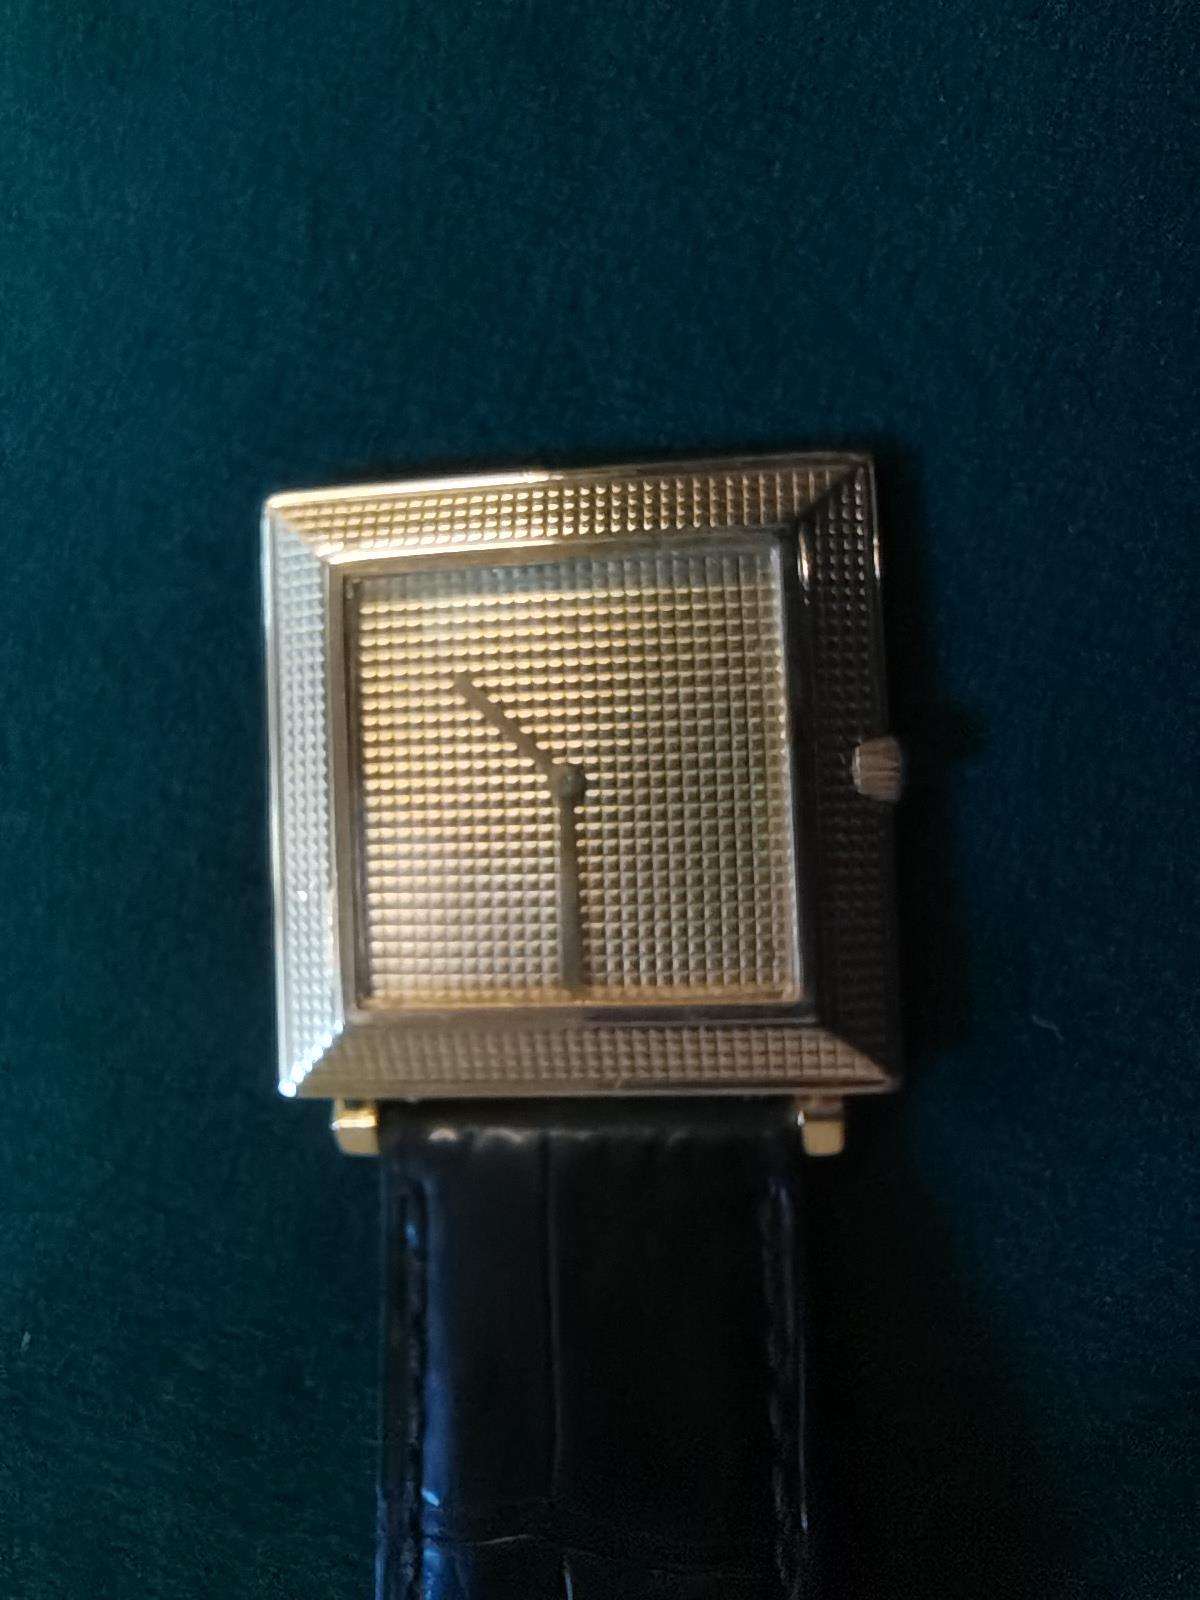 An 18 carat gold Boucheron 'Carrée' wristwatch - Image 13 of 19